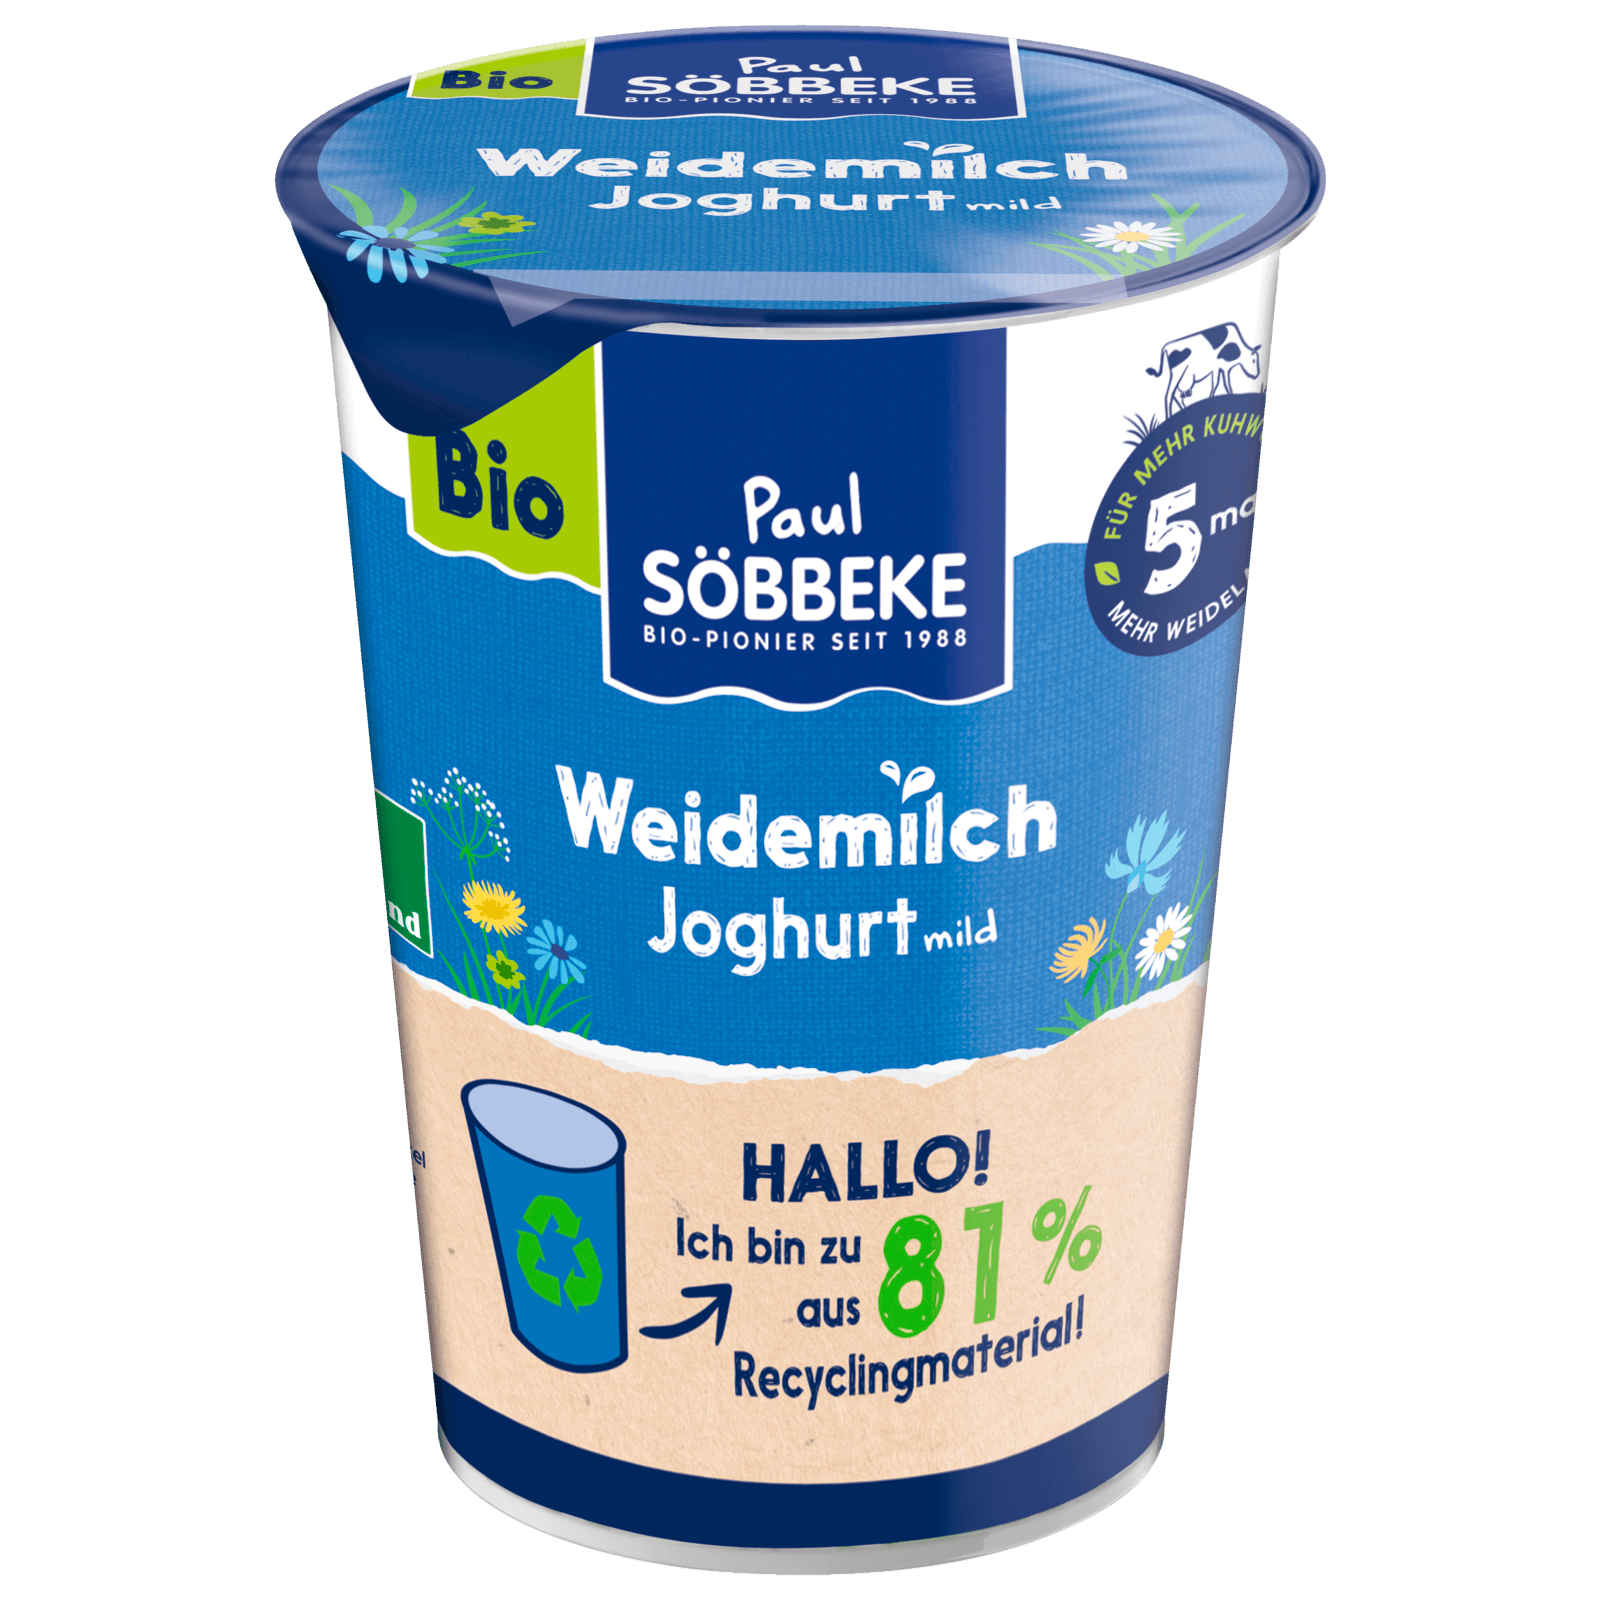 Söbbeke Bioland Joghurt Mild 3,7% 500g bei REWE online bestellen!